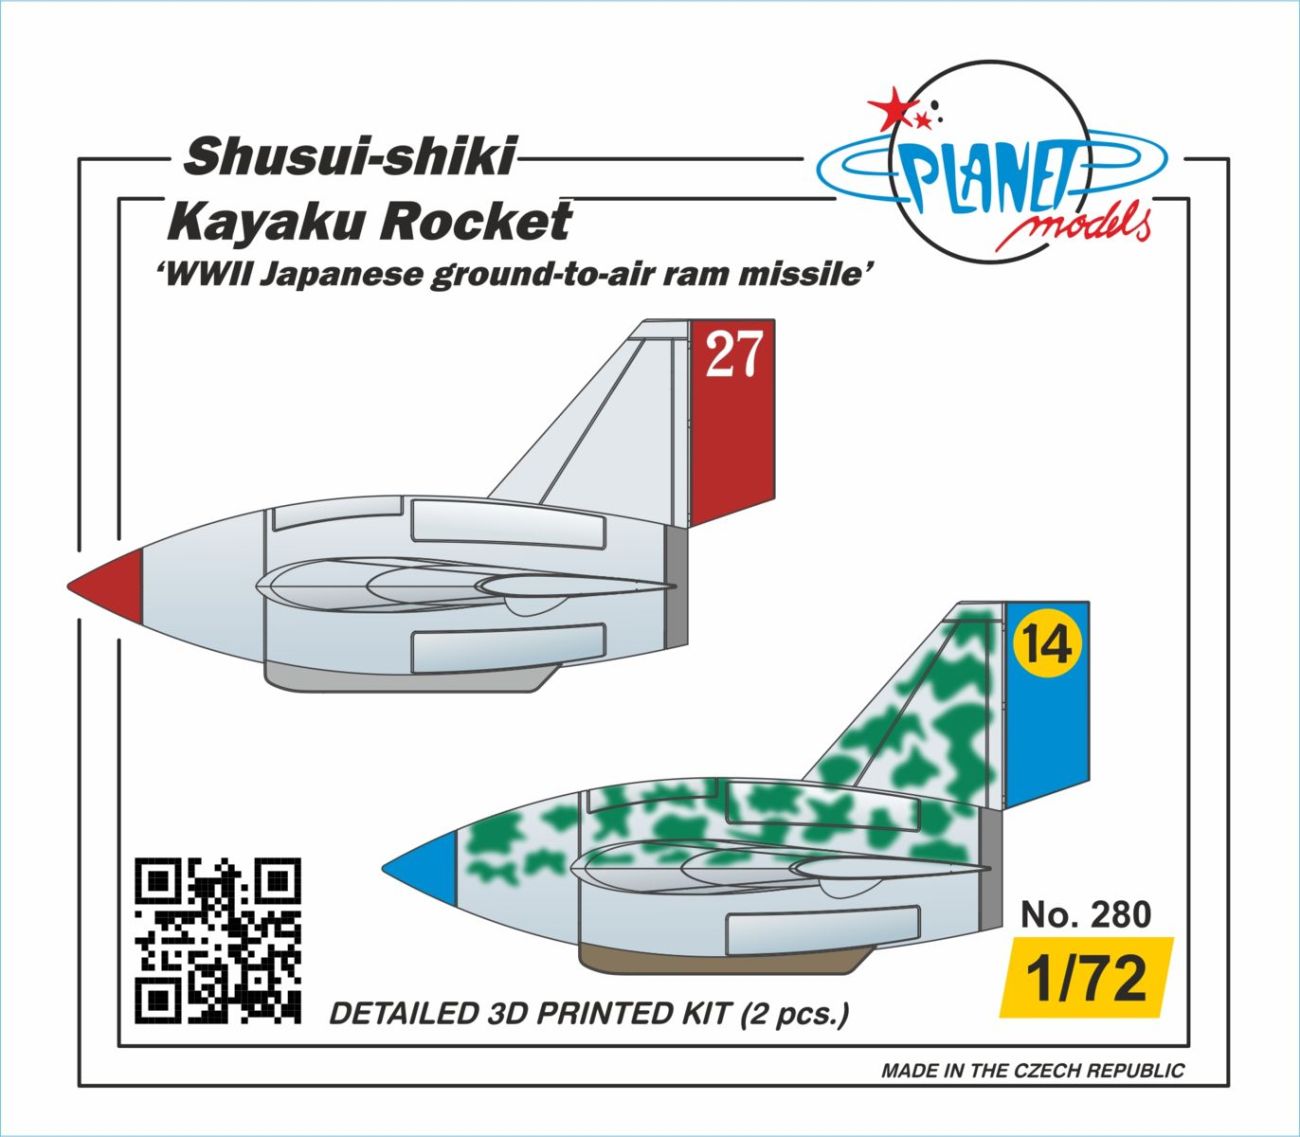 1/72 Shusui-shiki Kayaku Rocket WWII (2 pcs.)